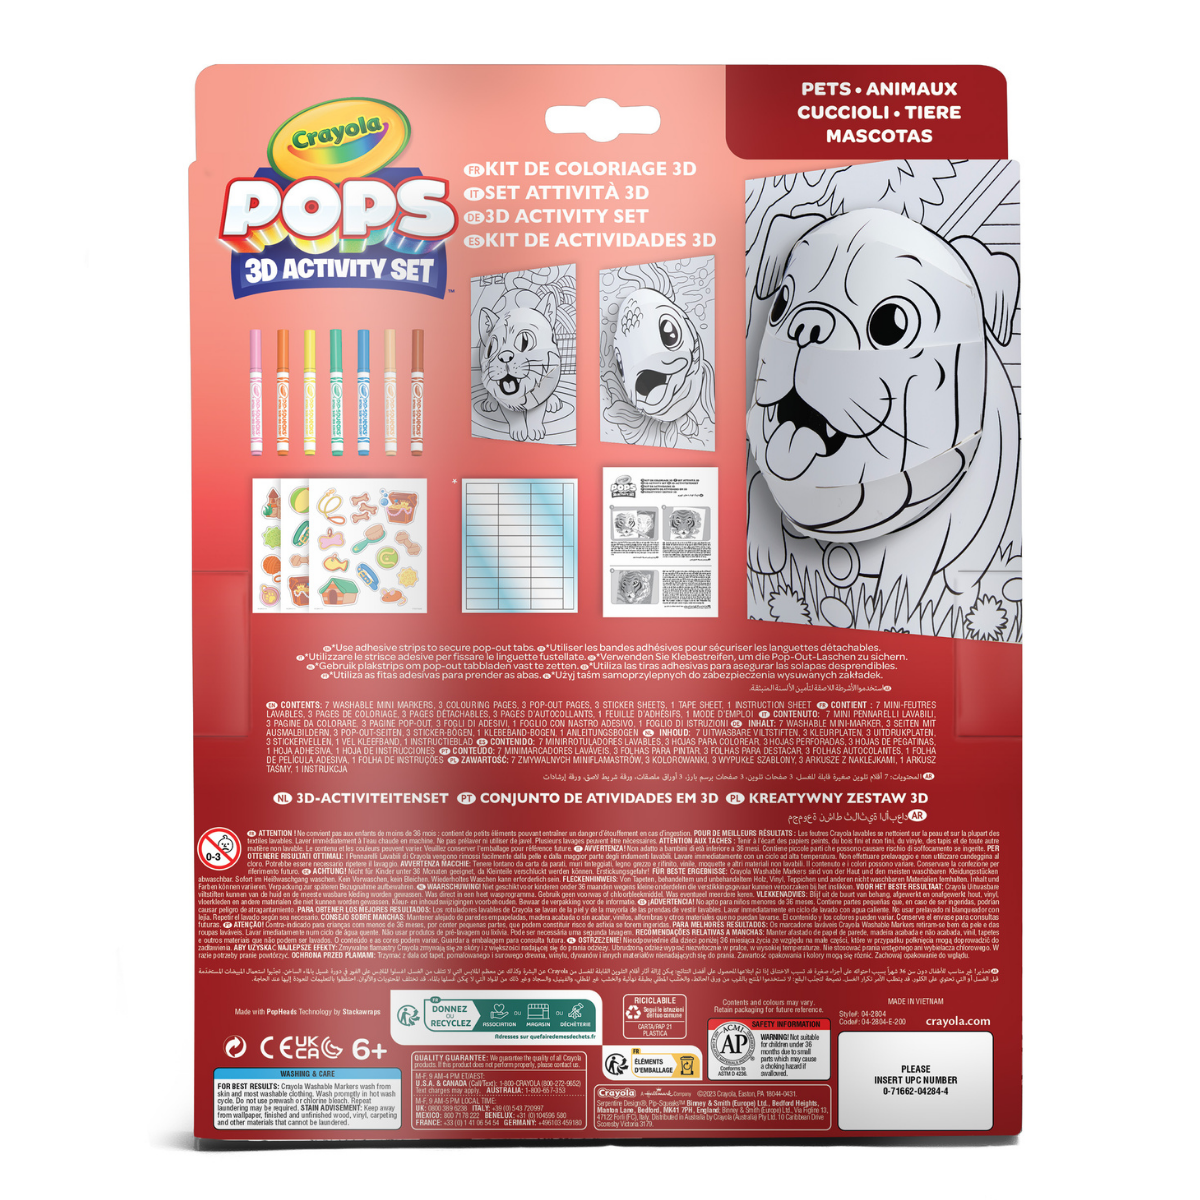 Crayola pops 3d activity set cuccioli - 3 soggetti - colora e crea disegni tridimensionali - CRAYOLA